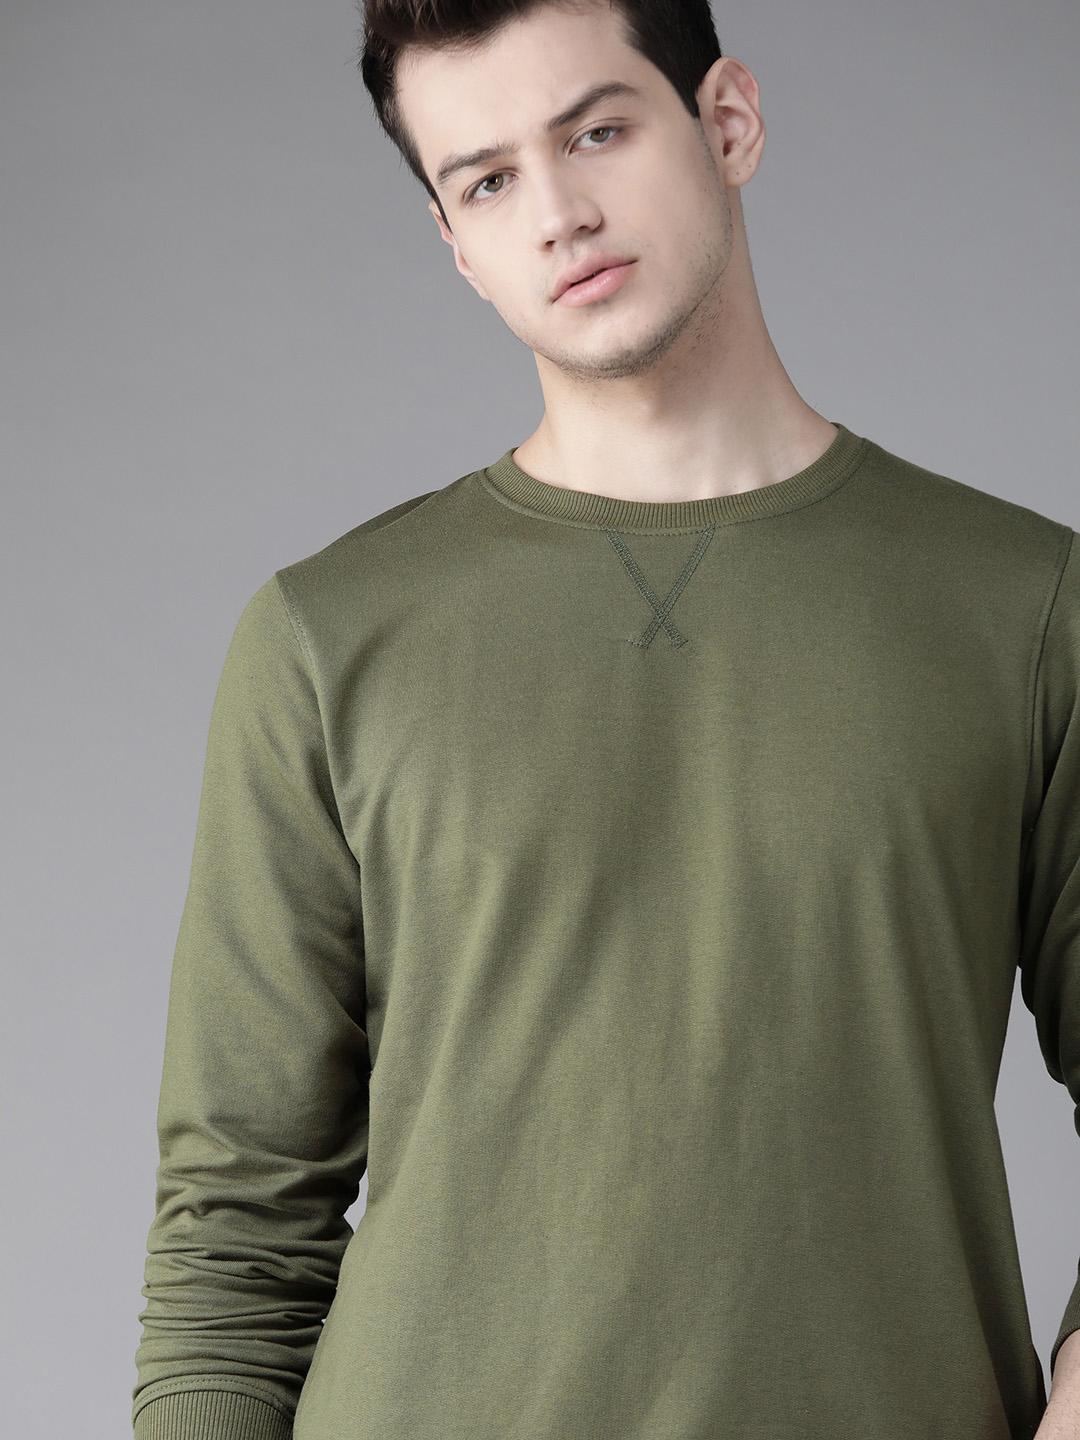 roadster-men-olive-green-solid-sweatshirt